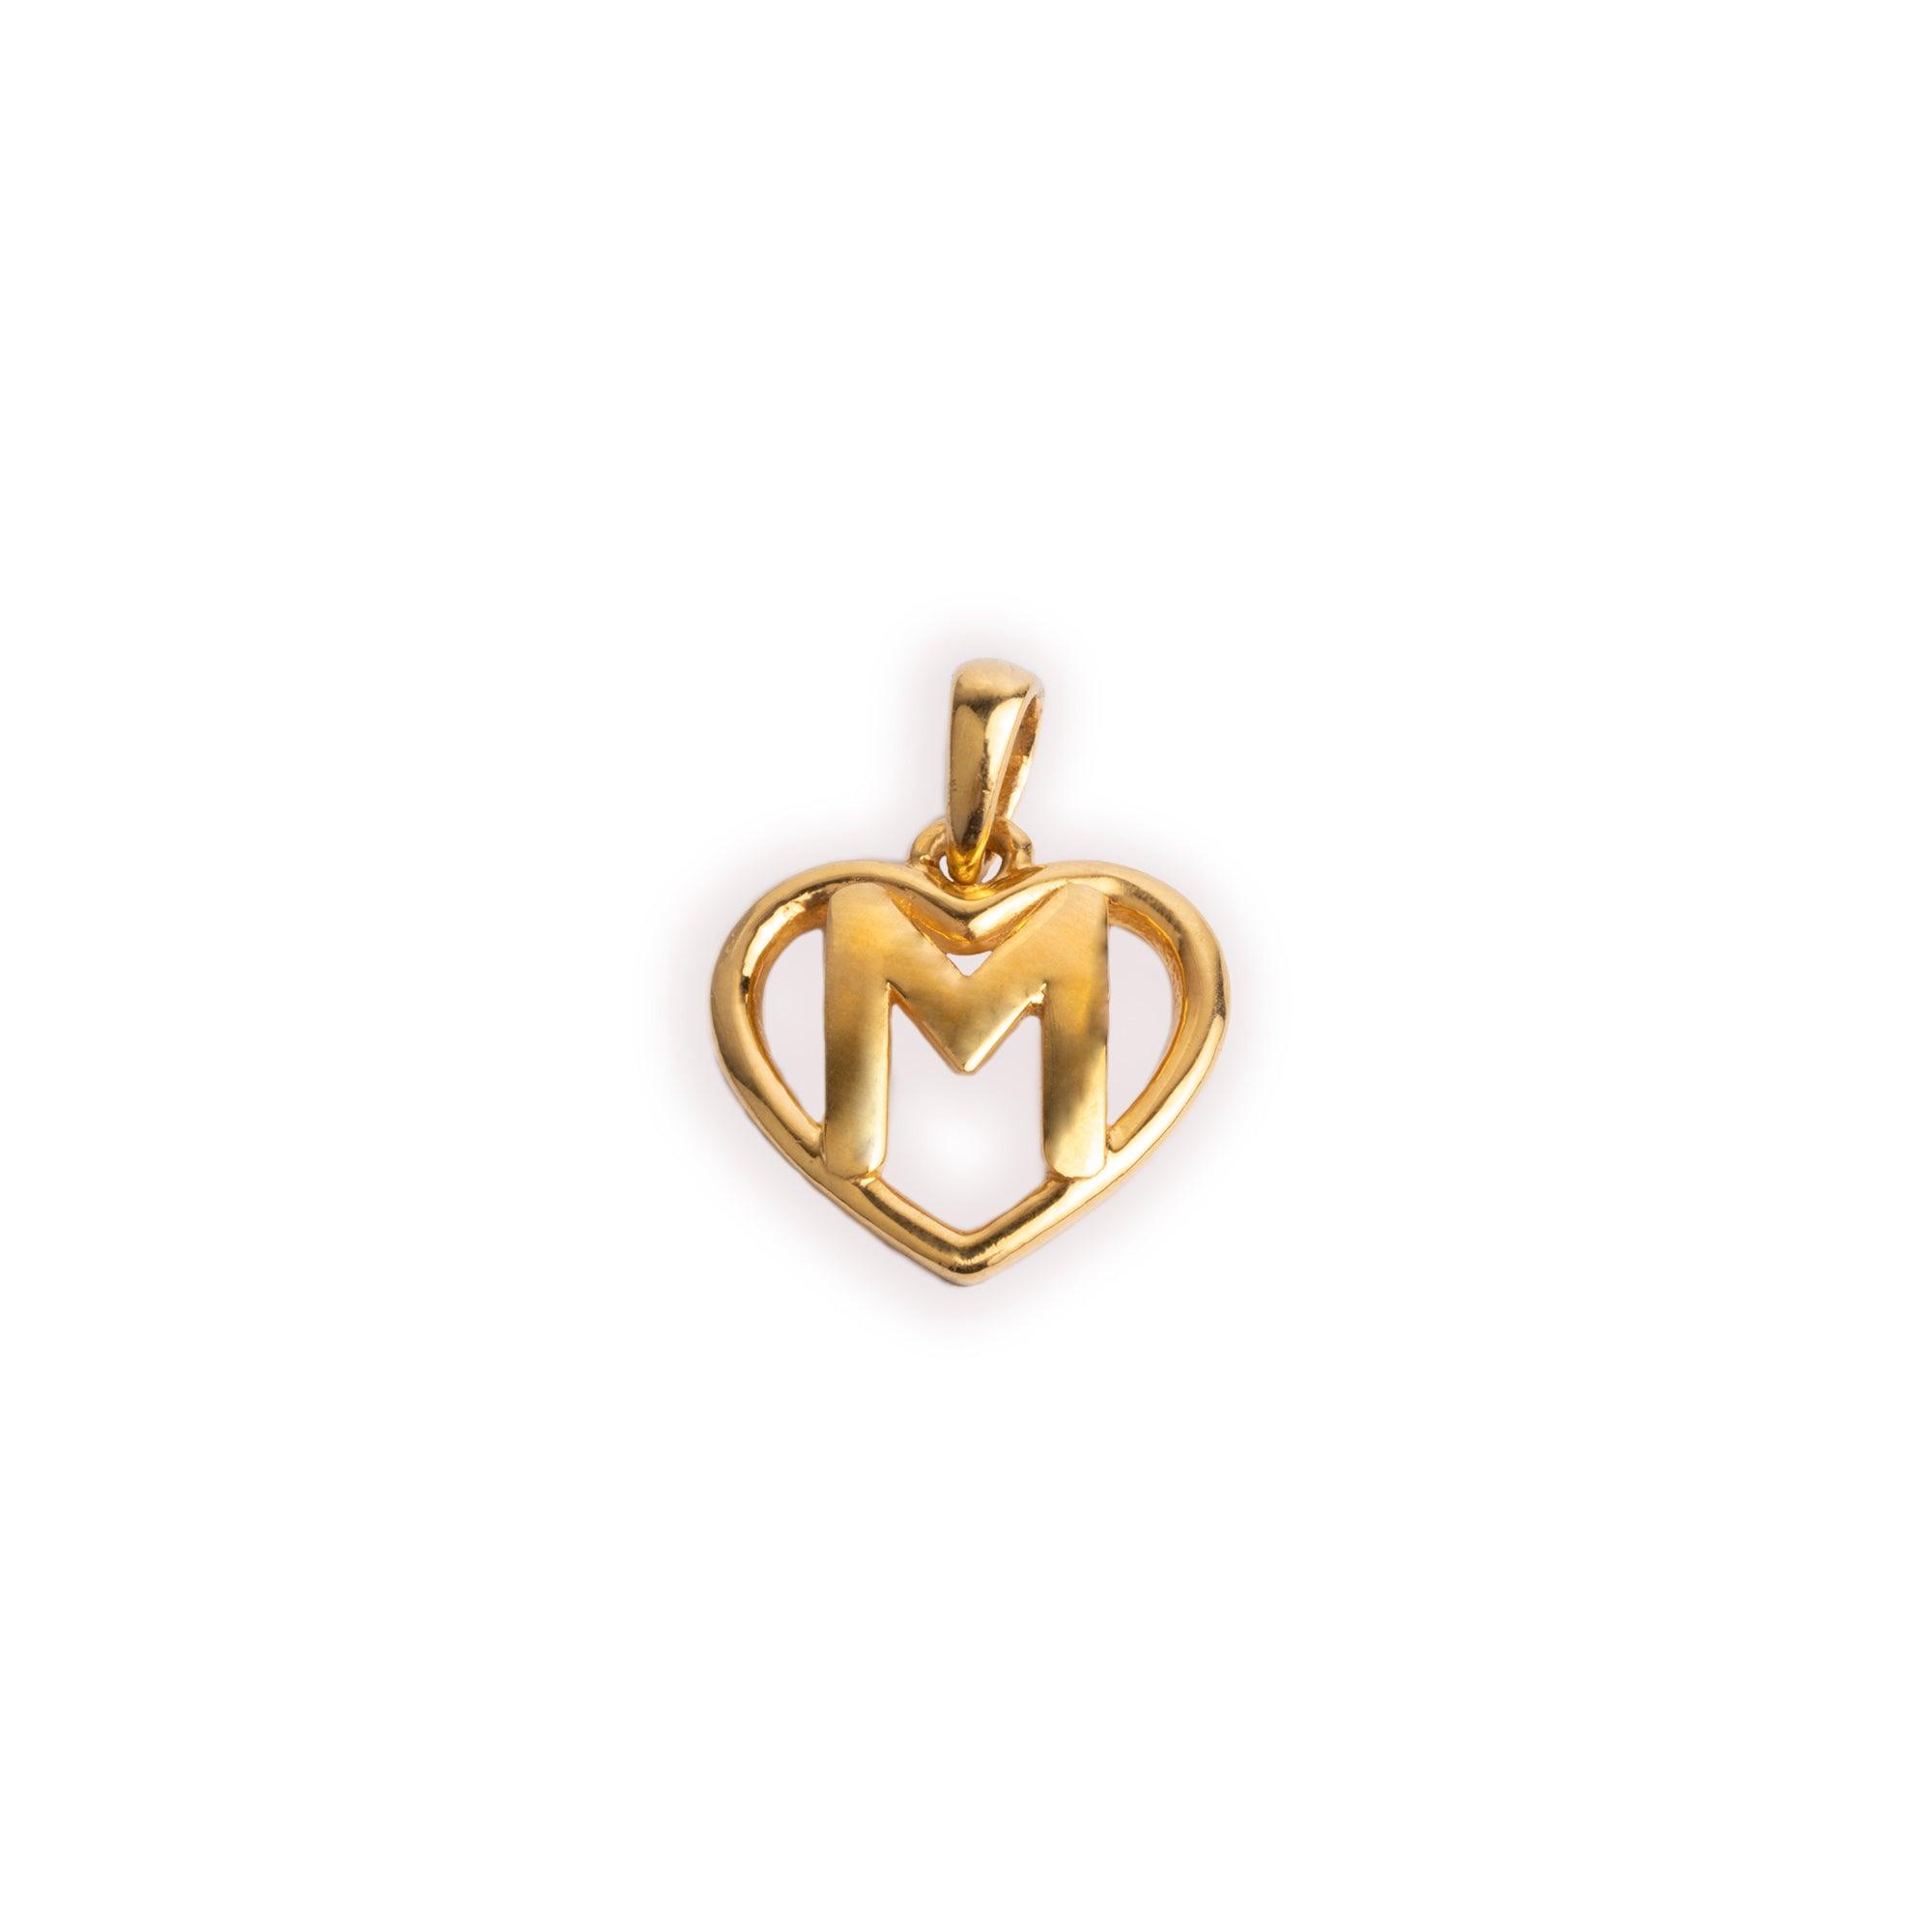 'M' 22ct Gold Heart Shape Initial Pendant P-7033-M